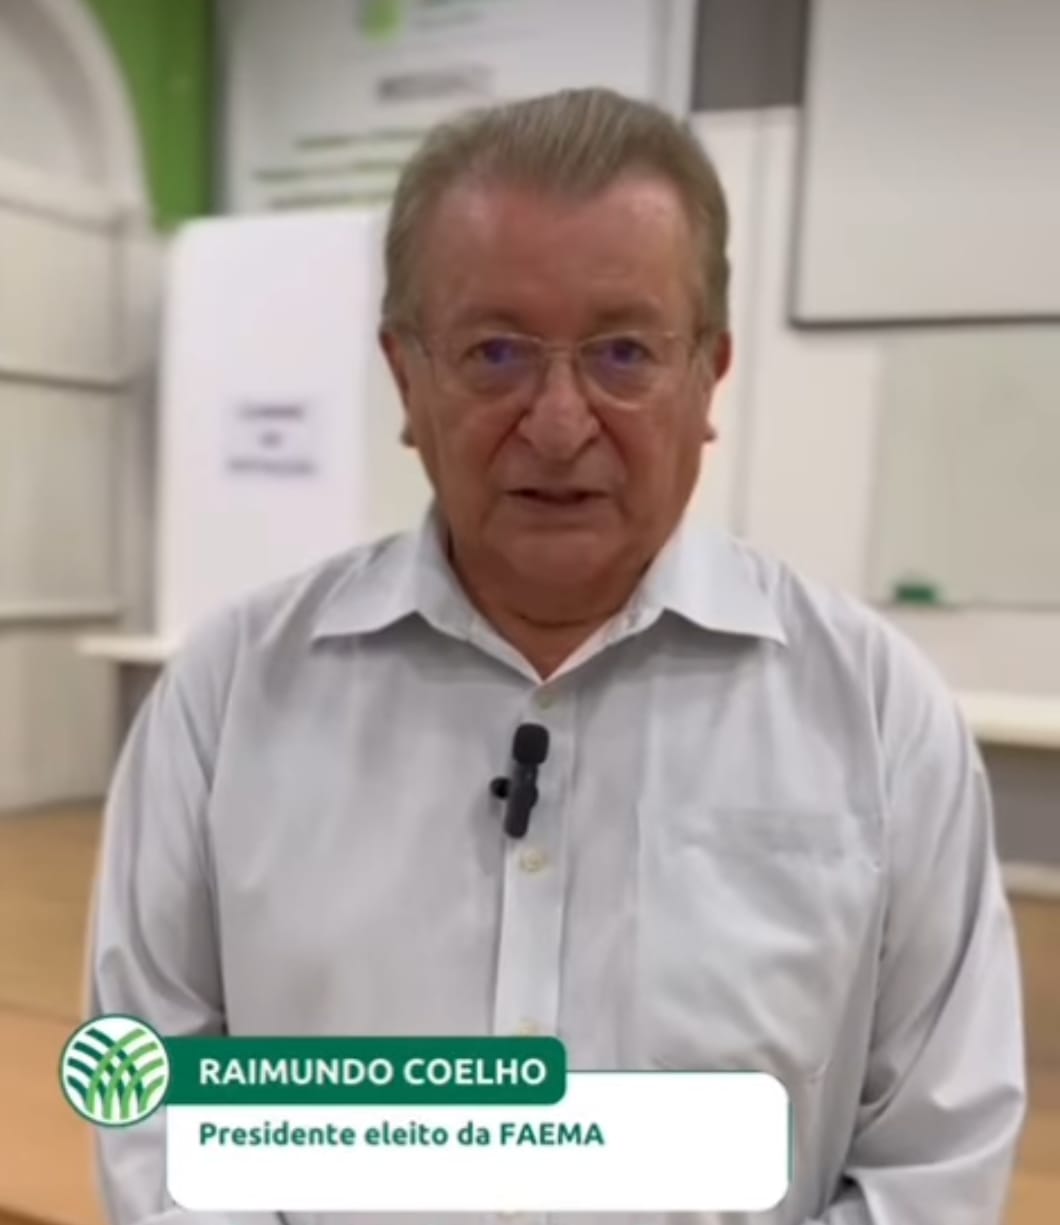 O presidente do sistema Faema/Senar Raimundo Coelho foi reeleito e reconduzido ao cargo para o ano de 2024 há 2027. Em destaque aqui na Portfólio Vip